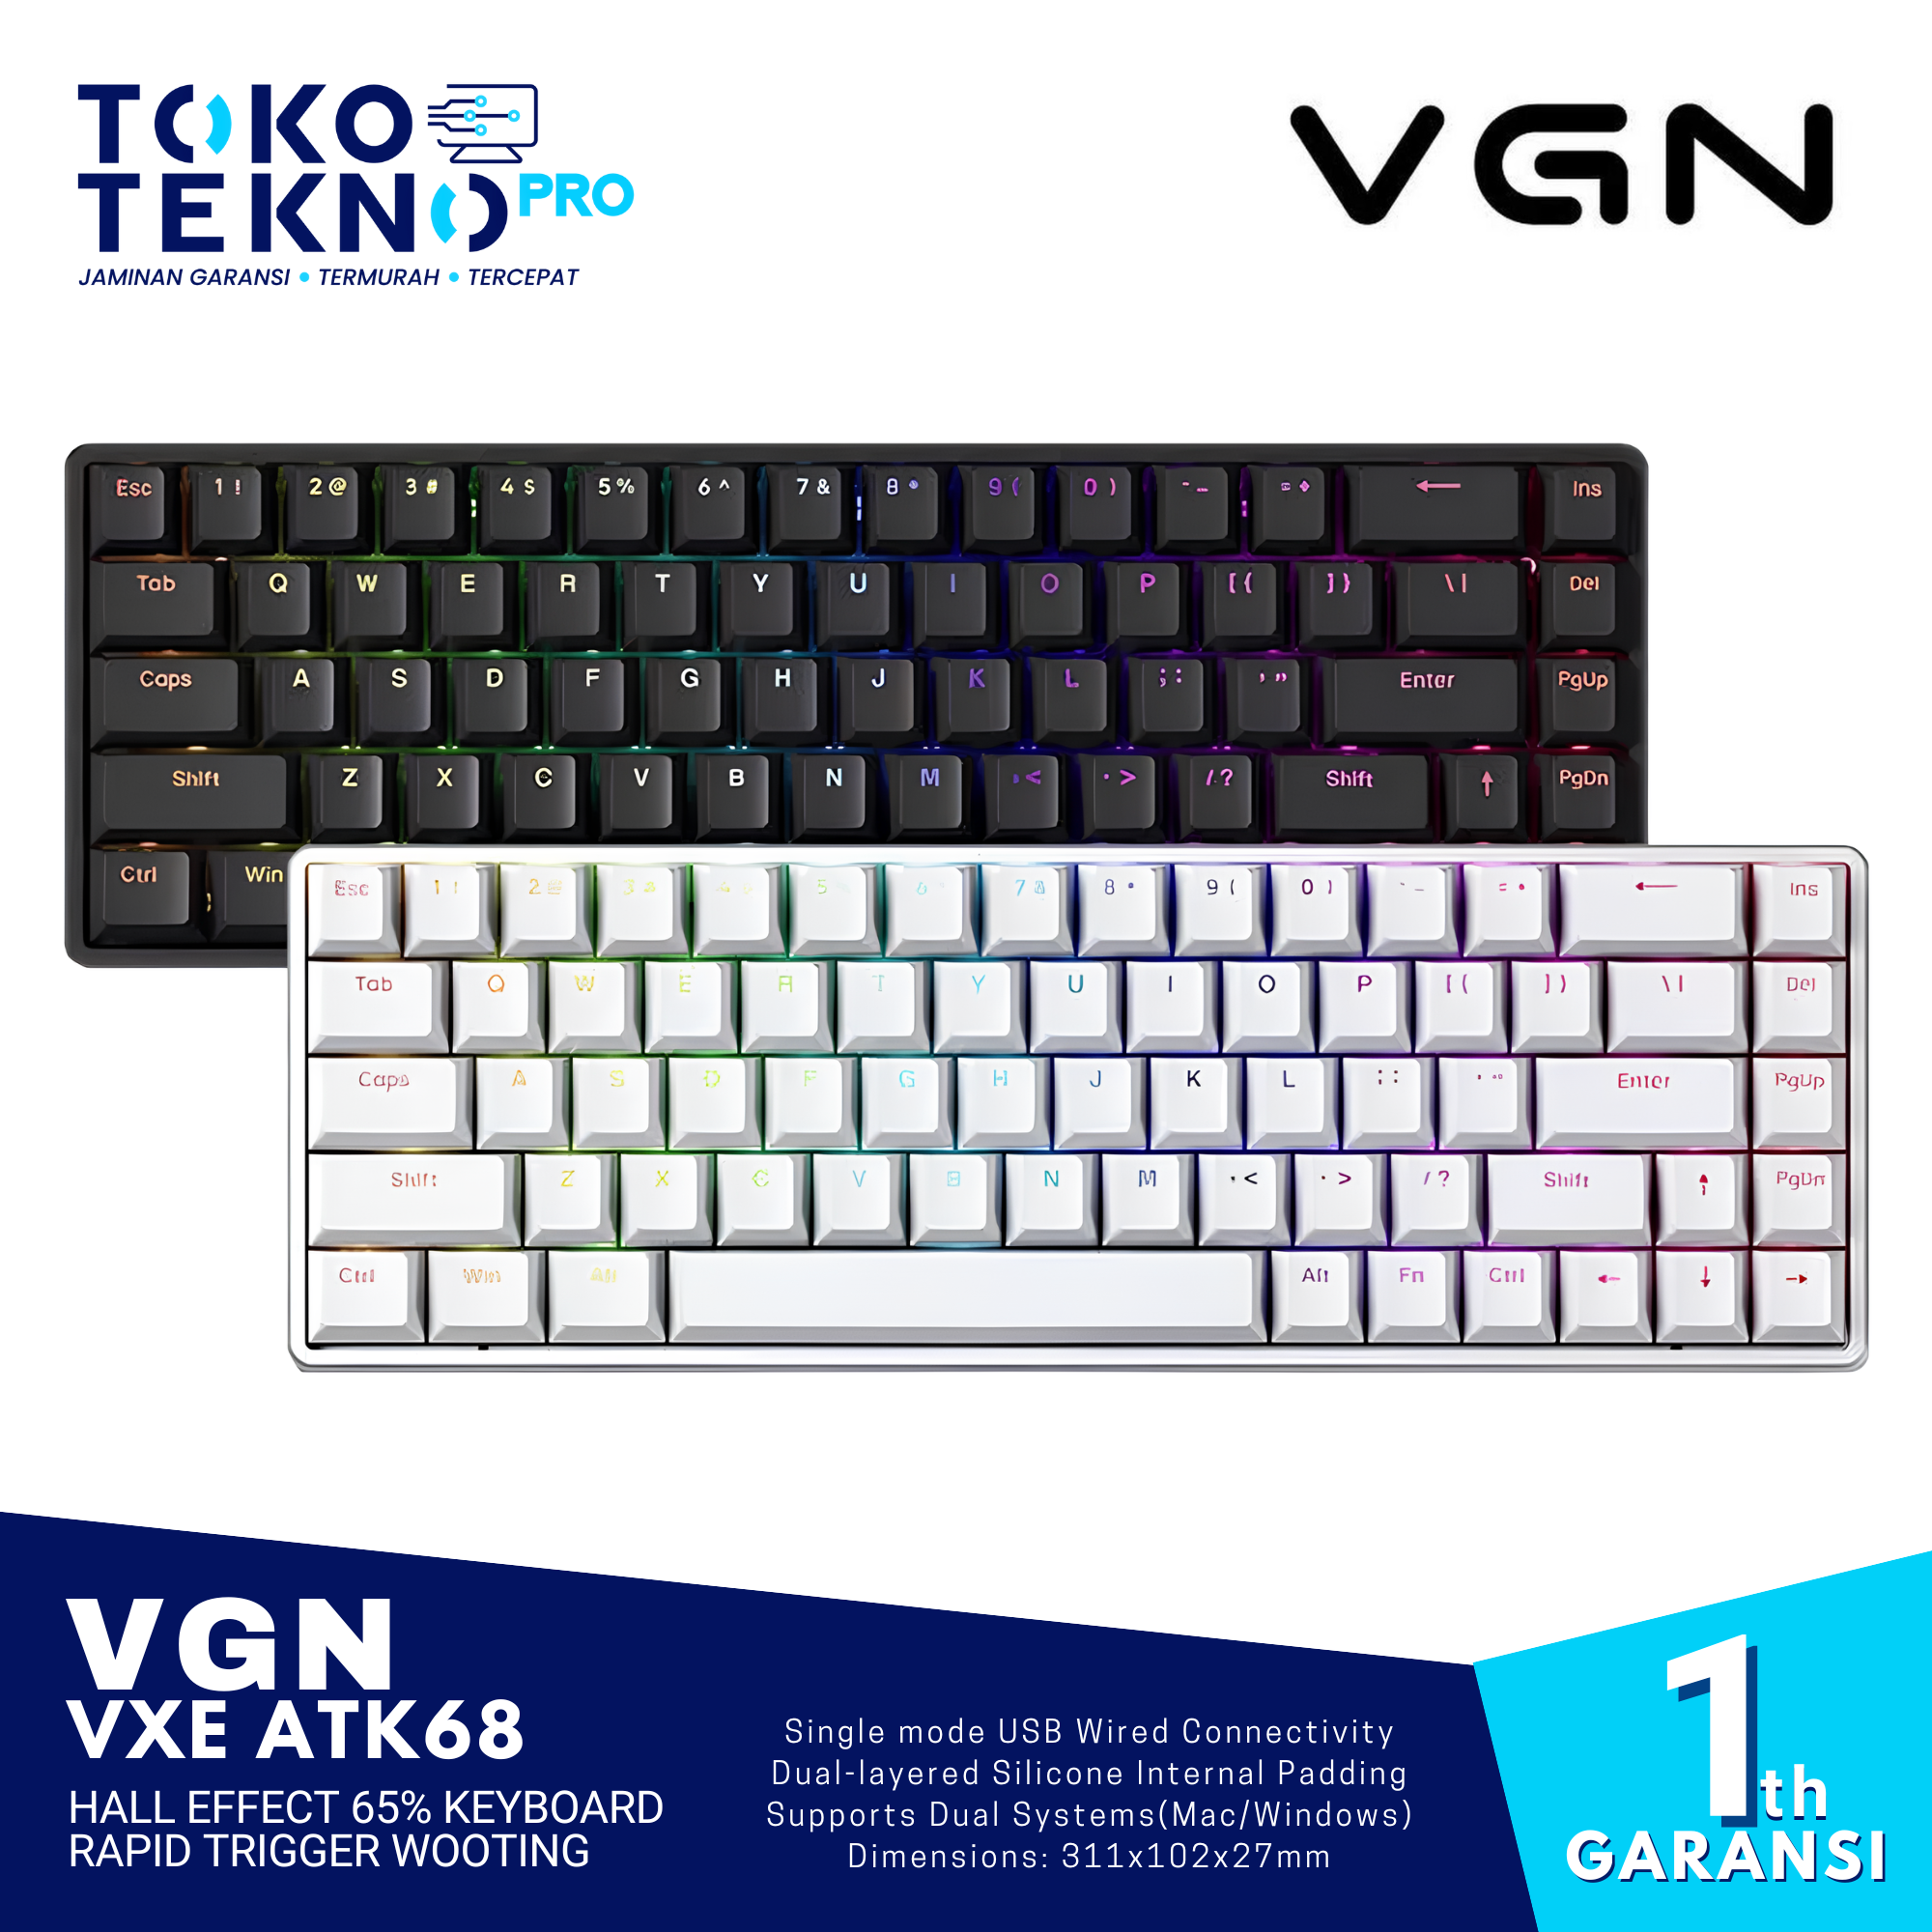 VGN VXE ATK68